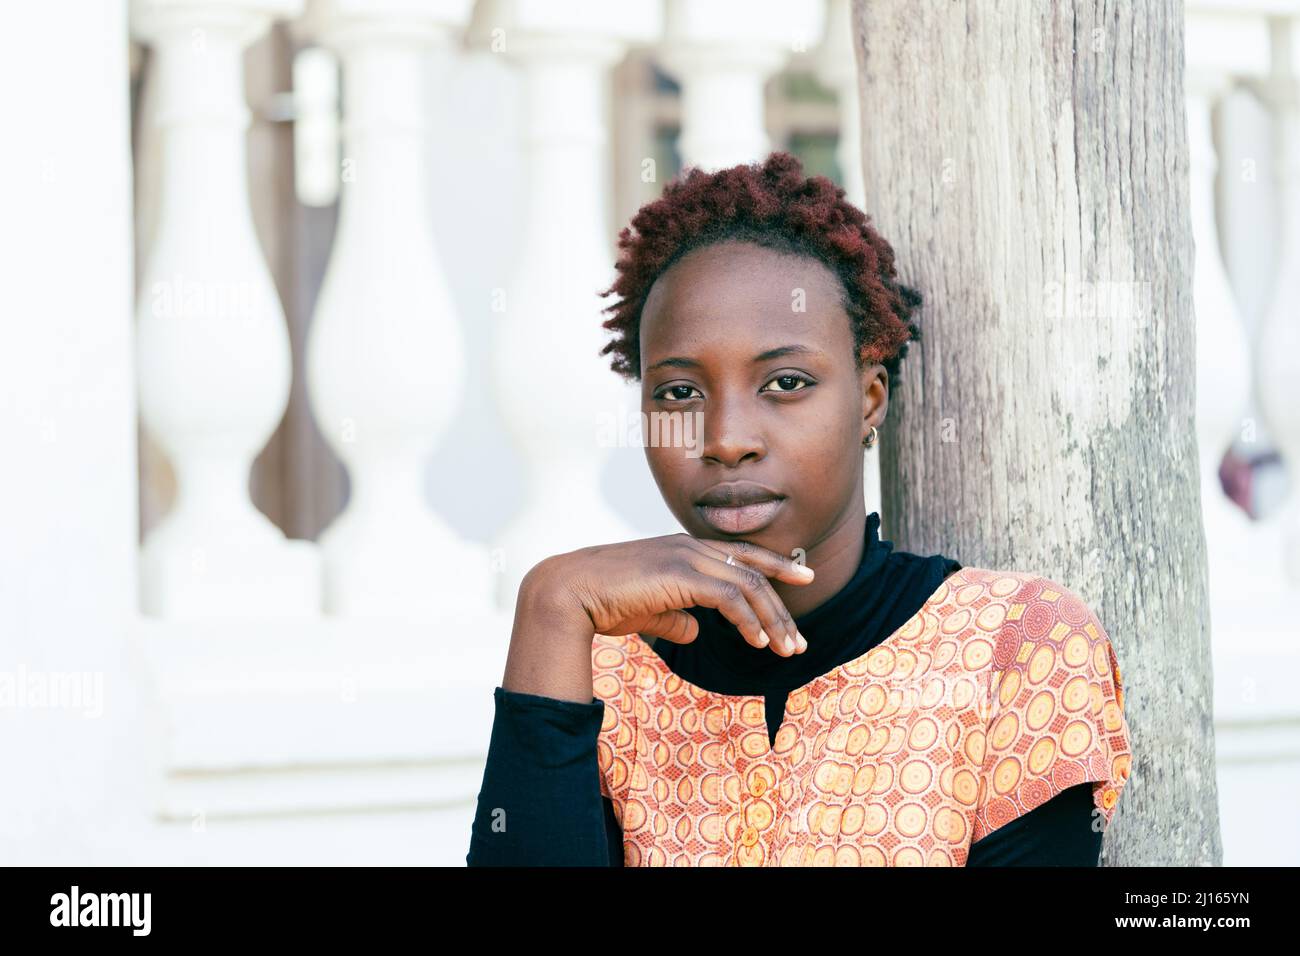 Ritratto di una seria bellezza adolescente africana con acconciatura moderna, il suo mento poggiato sulla mano, guardando direttamente nella macchina fotografica; simbolo di bellezza, Foto Stock